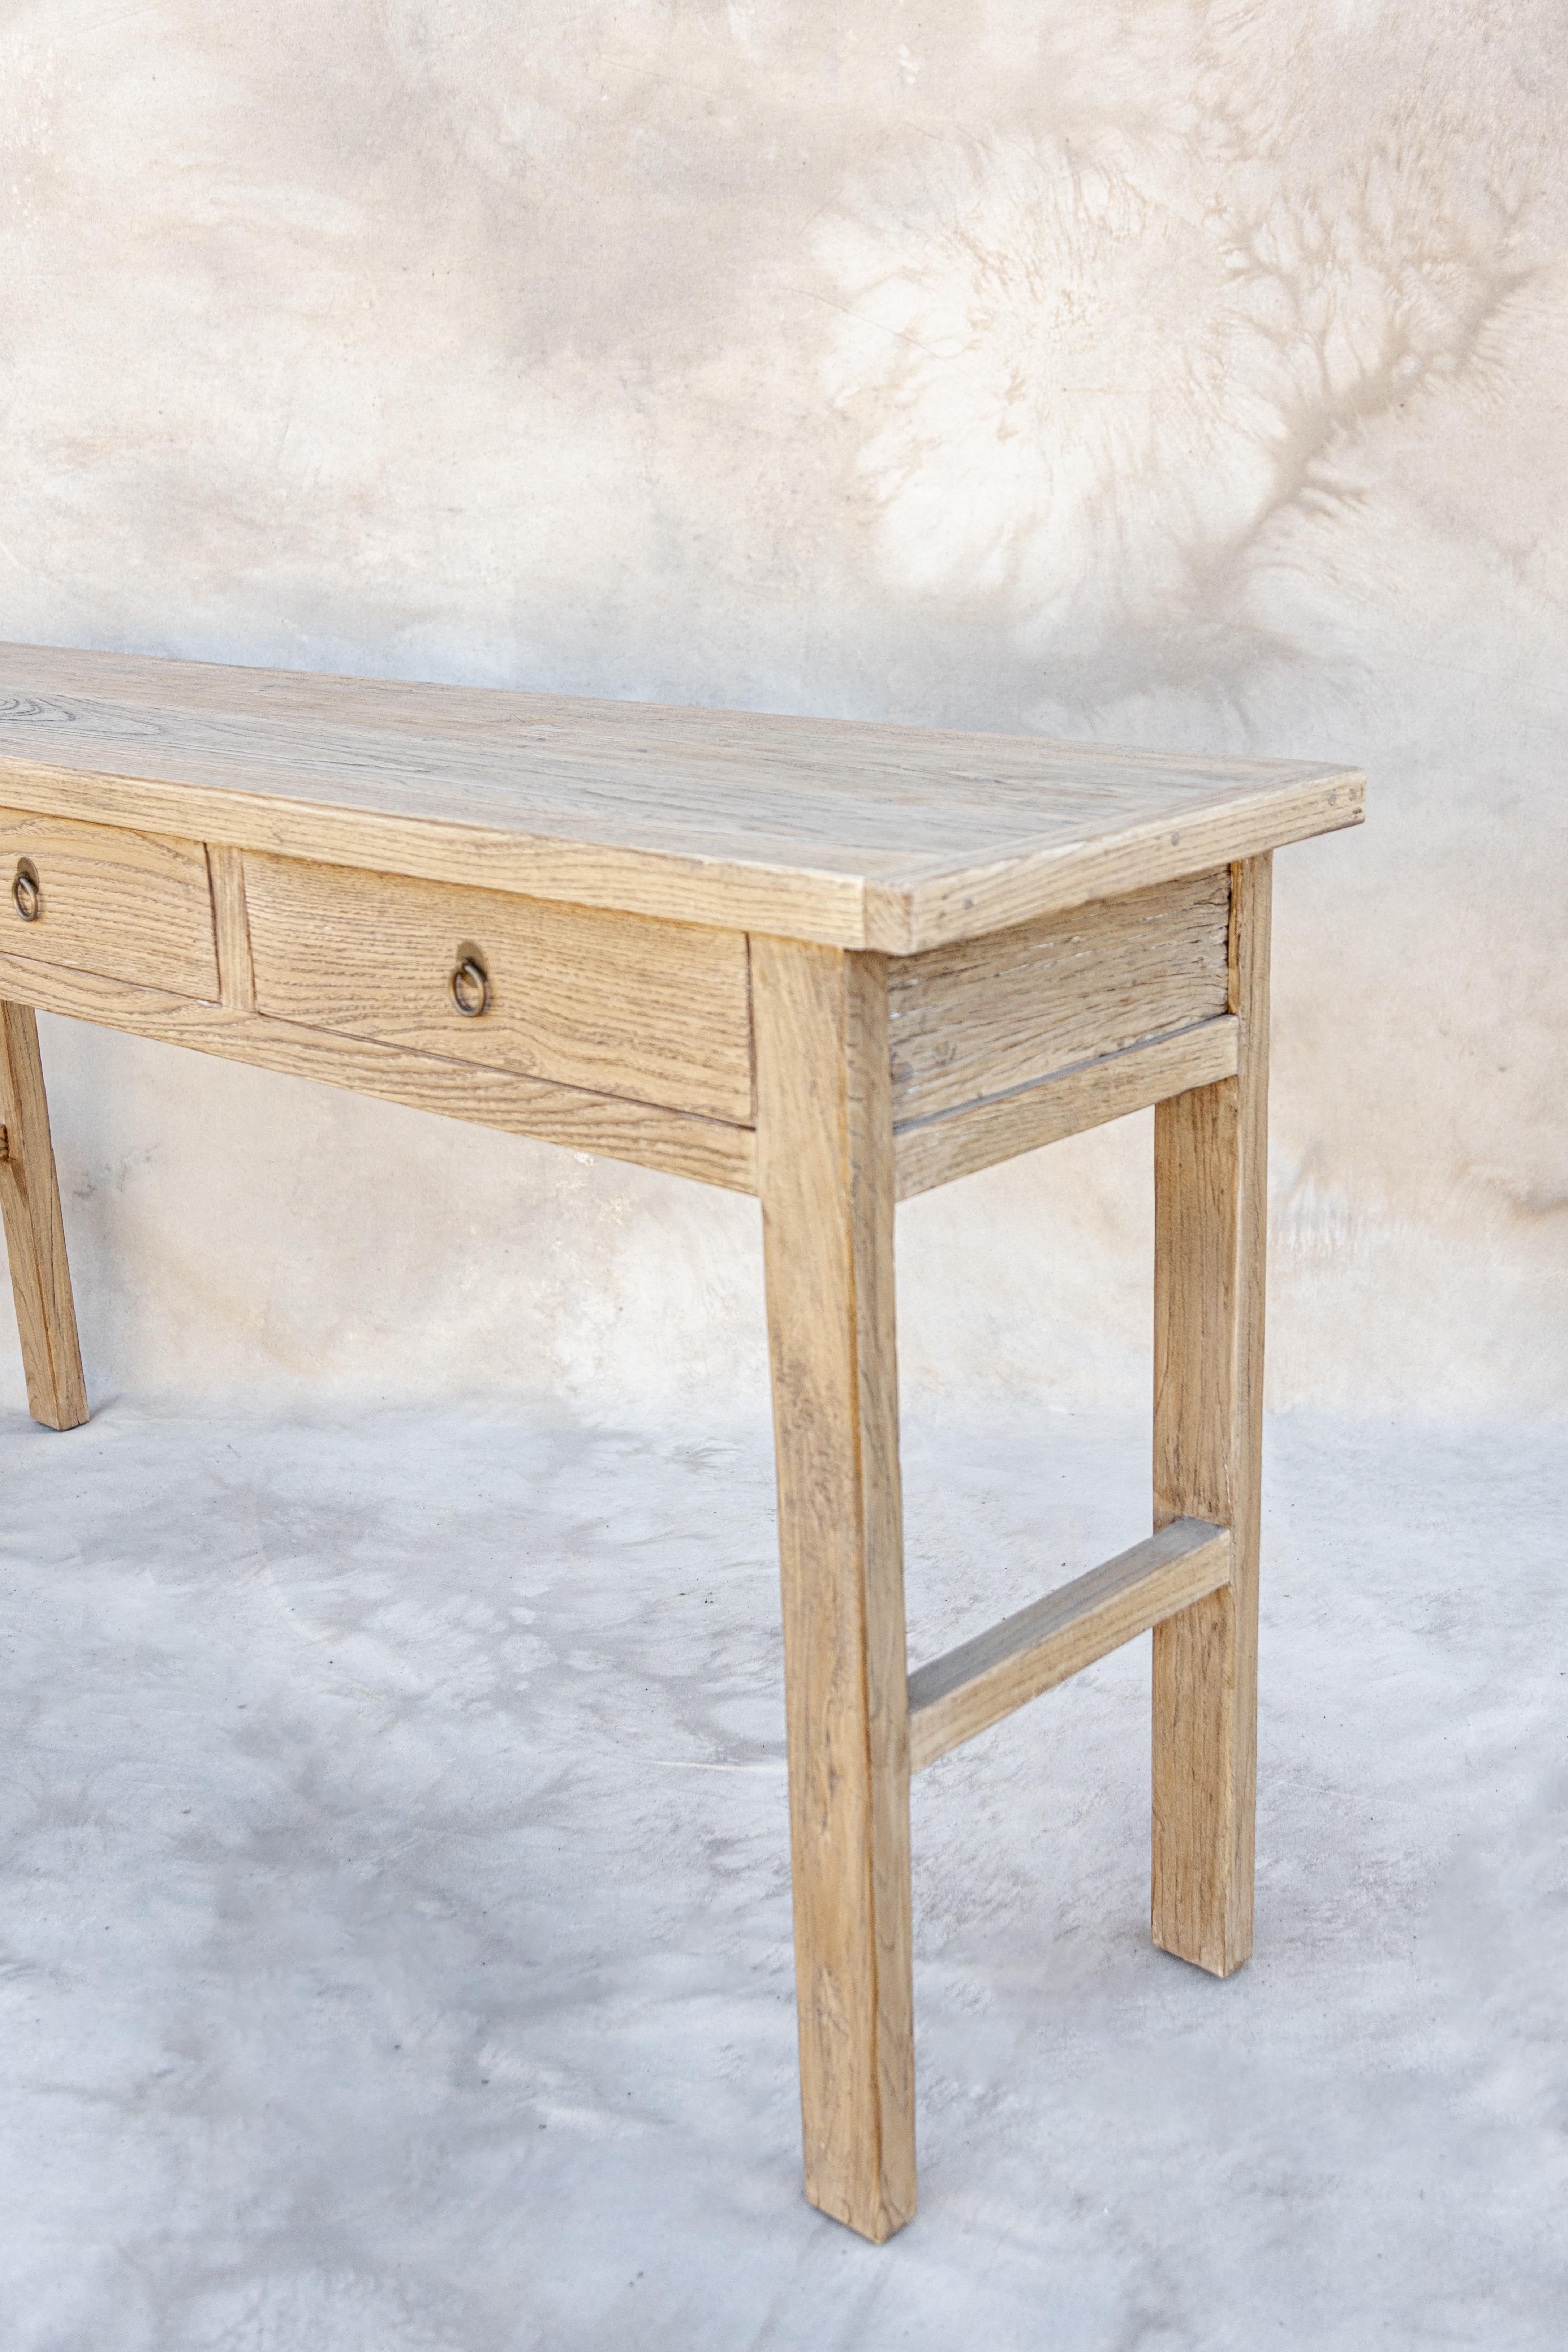 Voici notre table de consultation Franklin. Fabriqué à partir de bois d'orme vintage provenant d'Europe et d'Asie. Nous aimons les belles textures et les tons de bois naturels. Le design fonctionnel permet de ranger tout en créant de belles